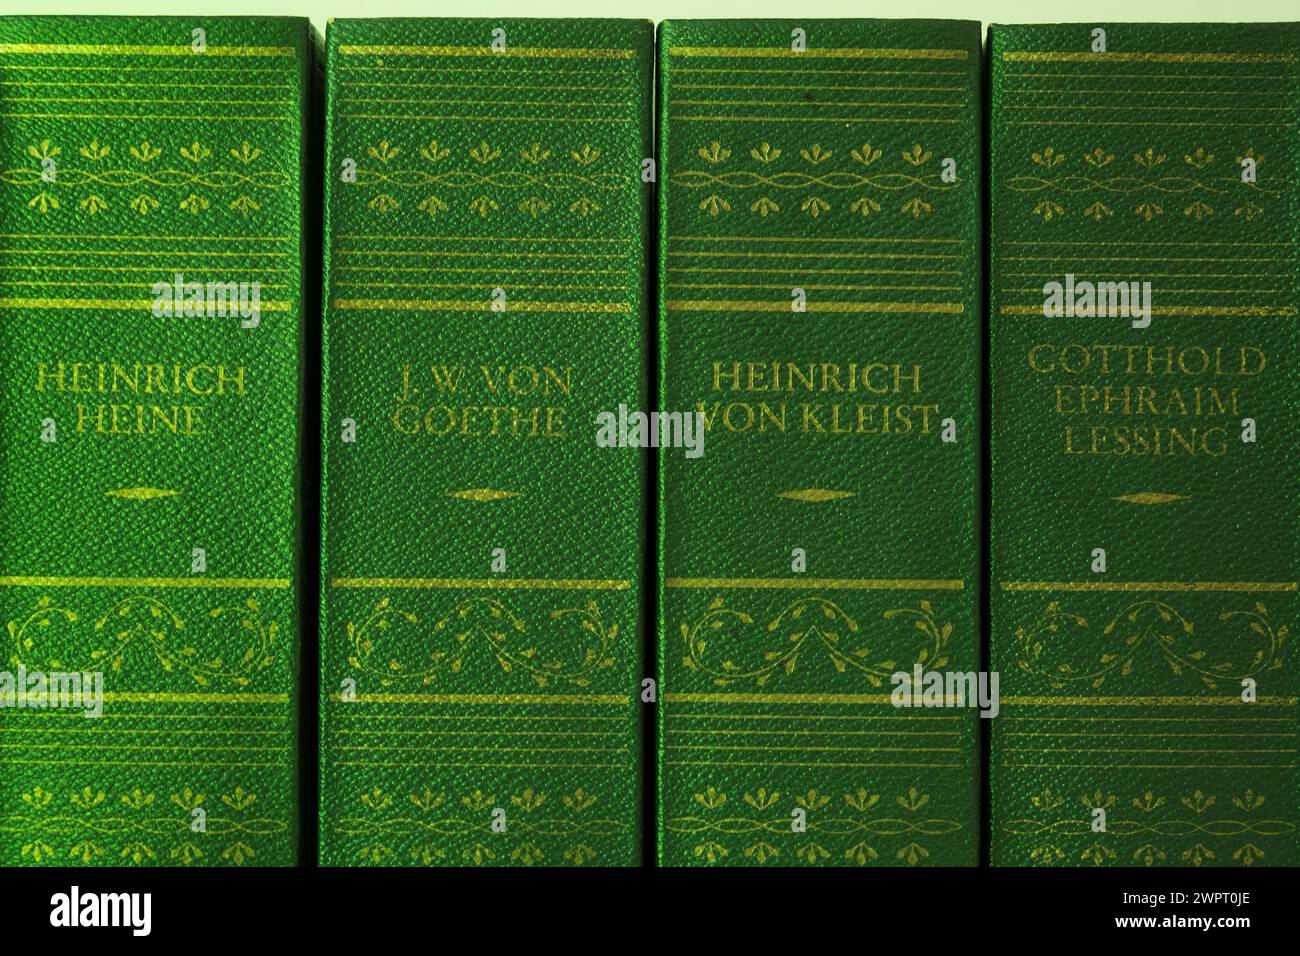 Les vieux livres avec des couvertures vertes ou des bords de livre sont testés pour l'arsenic toxique. Banque D'Images